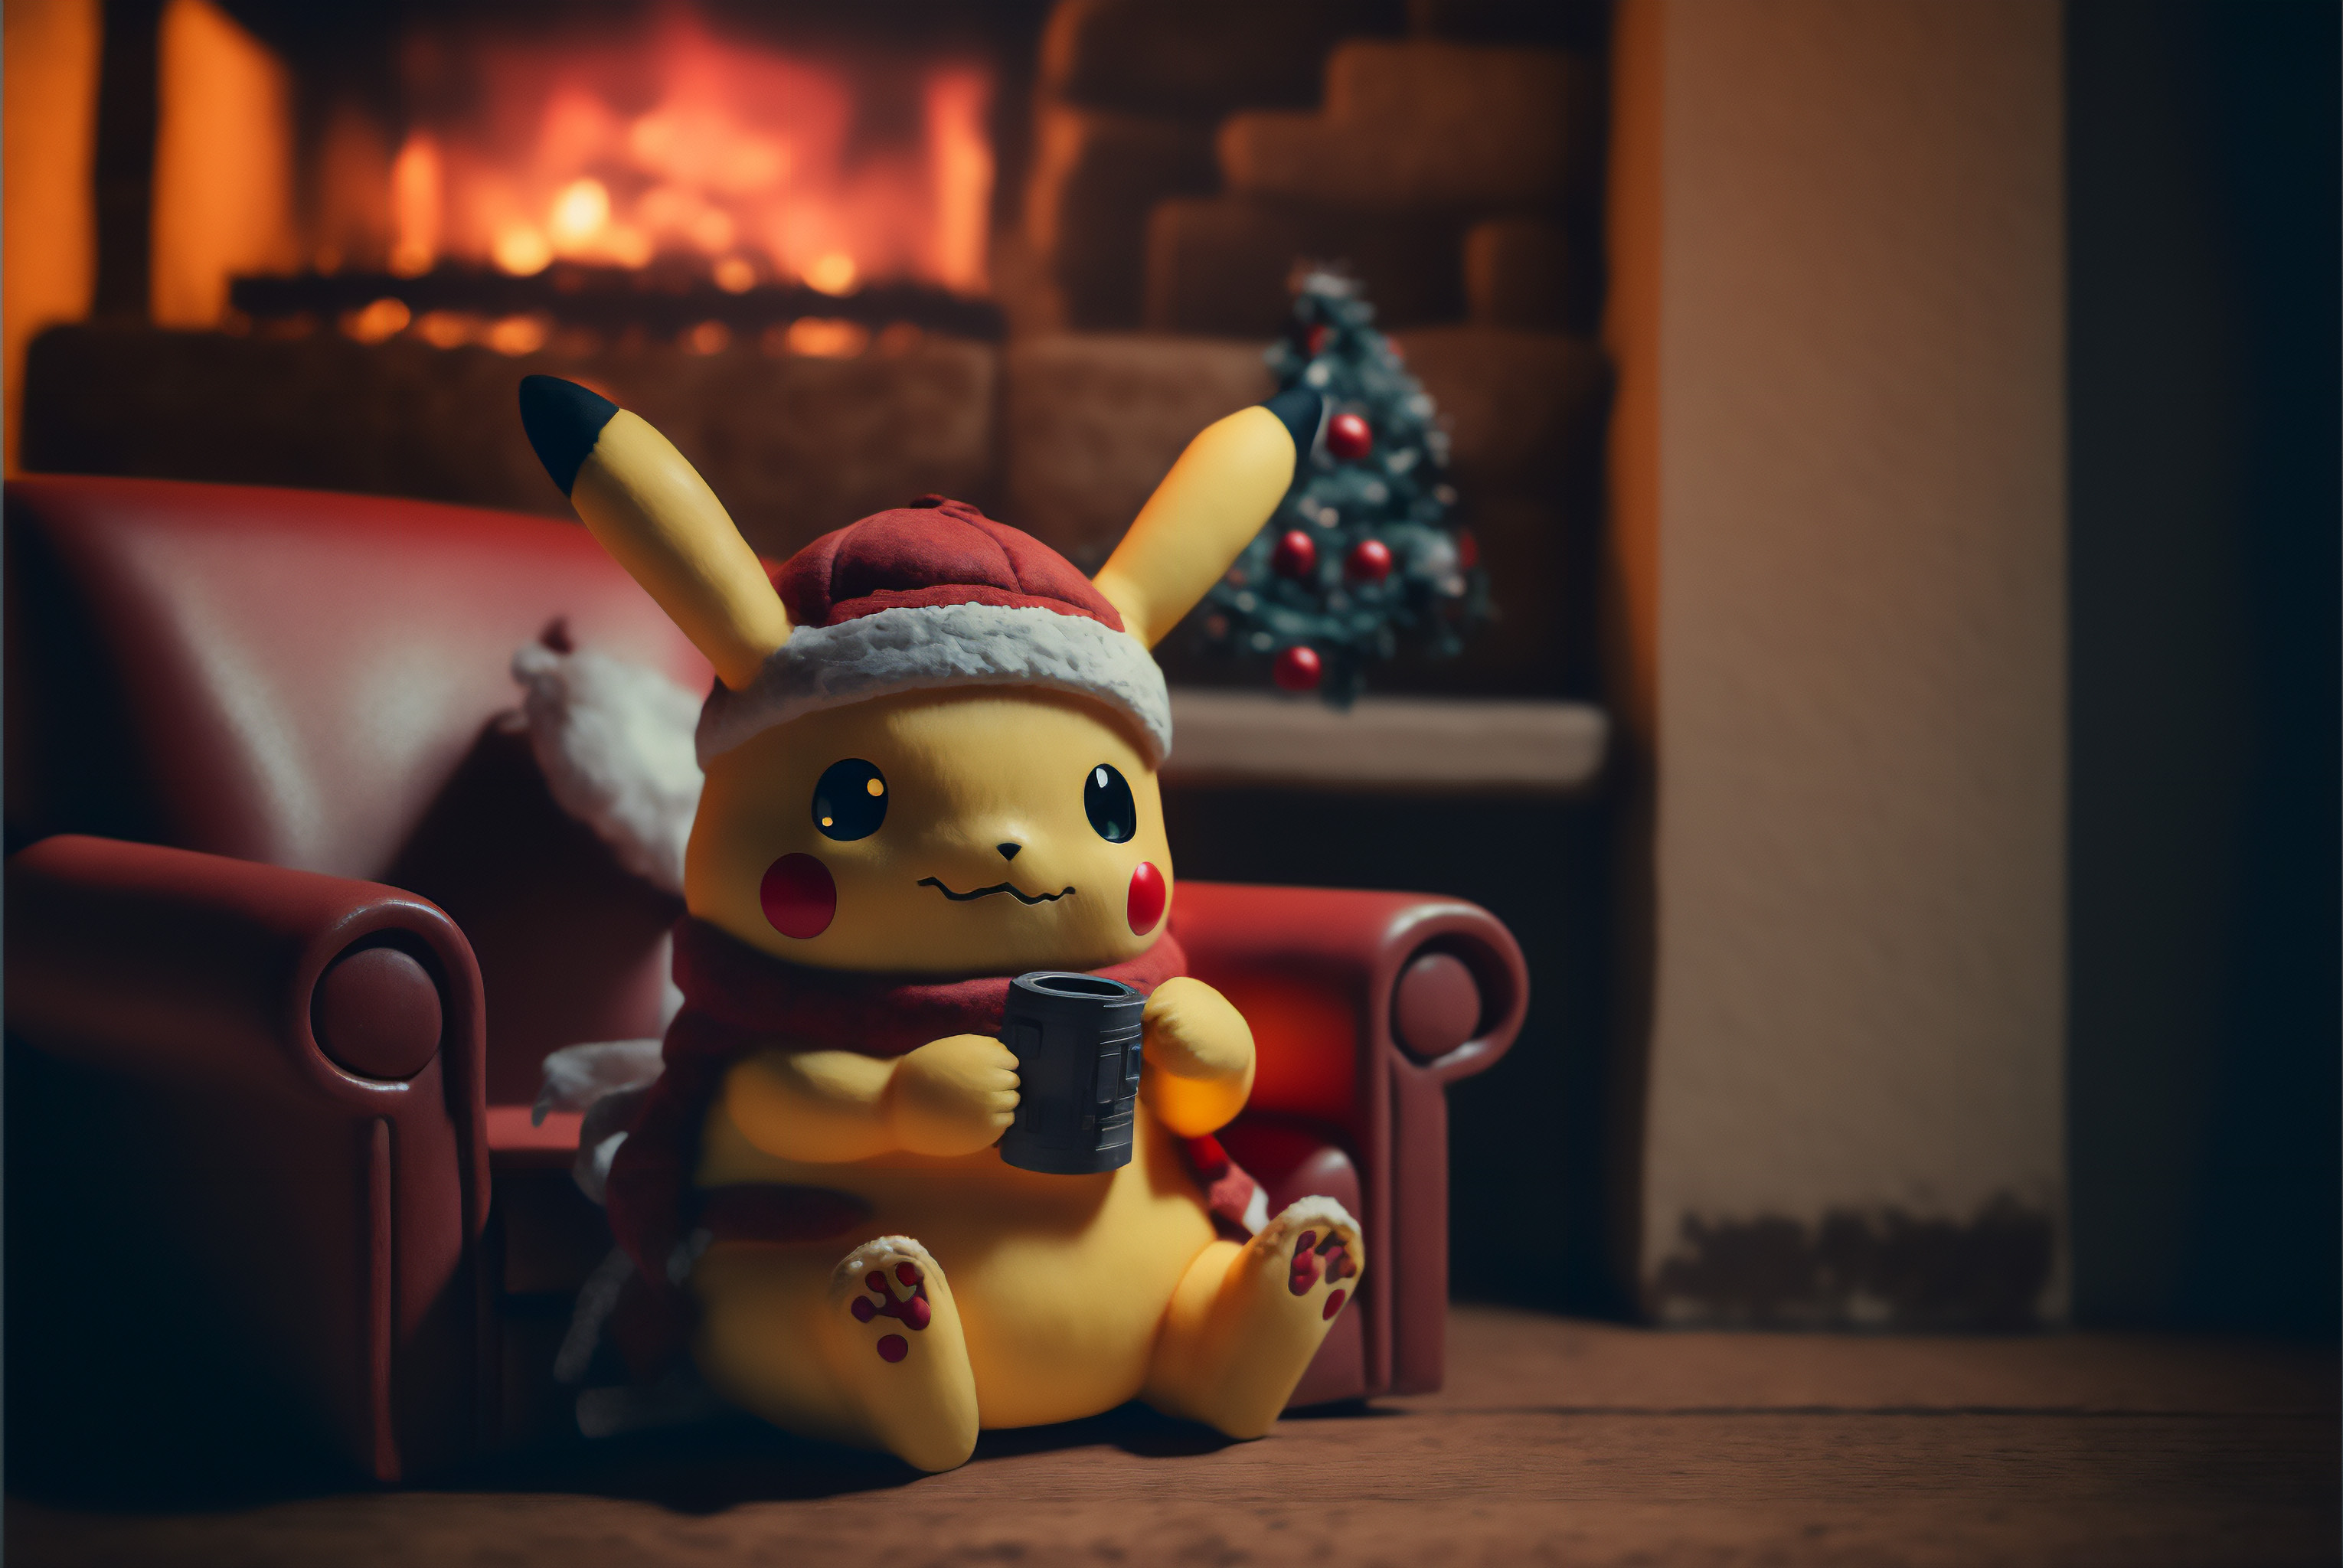 Ai Art Pikachu Pokemon Christmas Interior Scarf Christmas Tree Fireplace 3060x2048